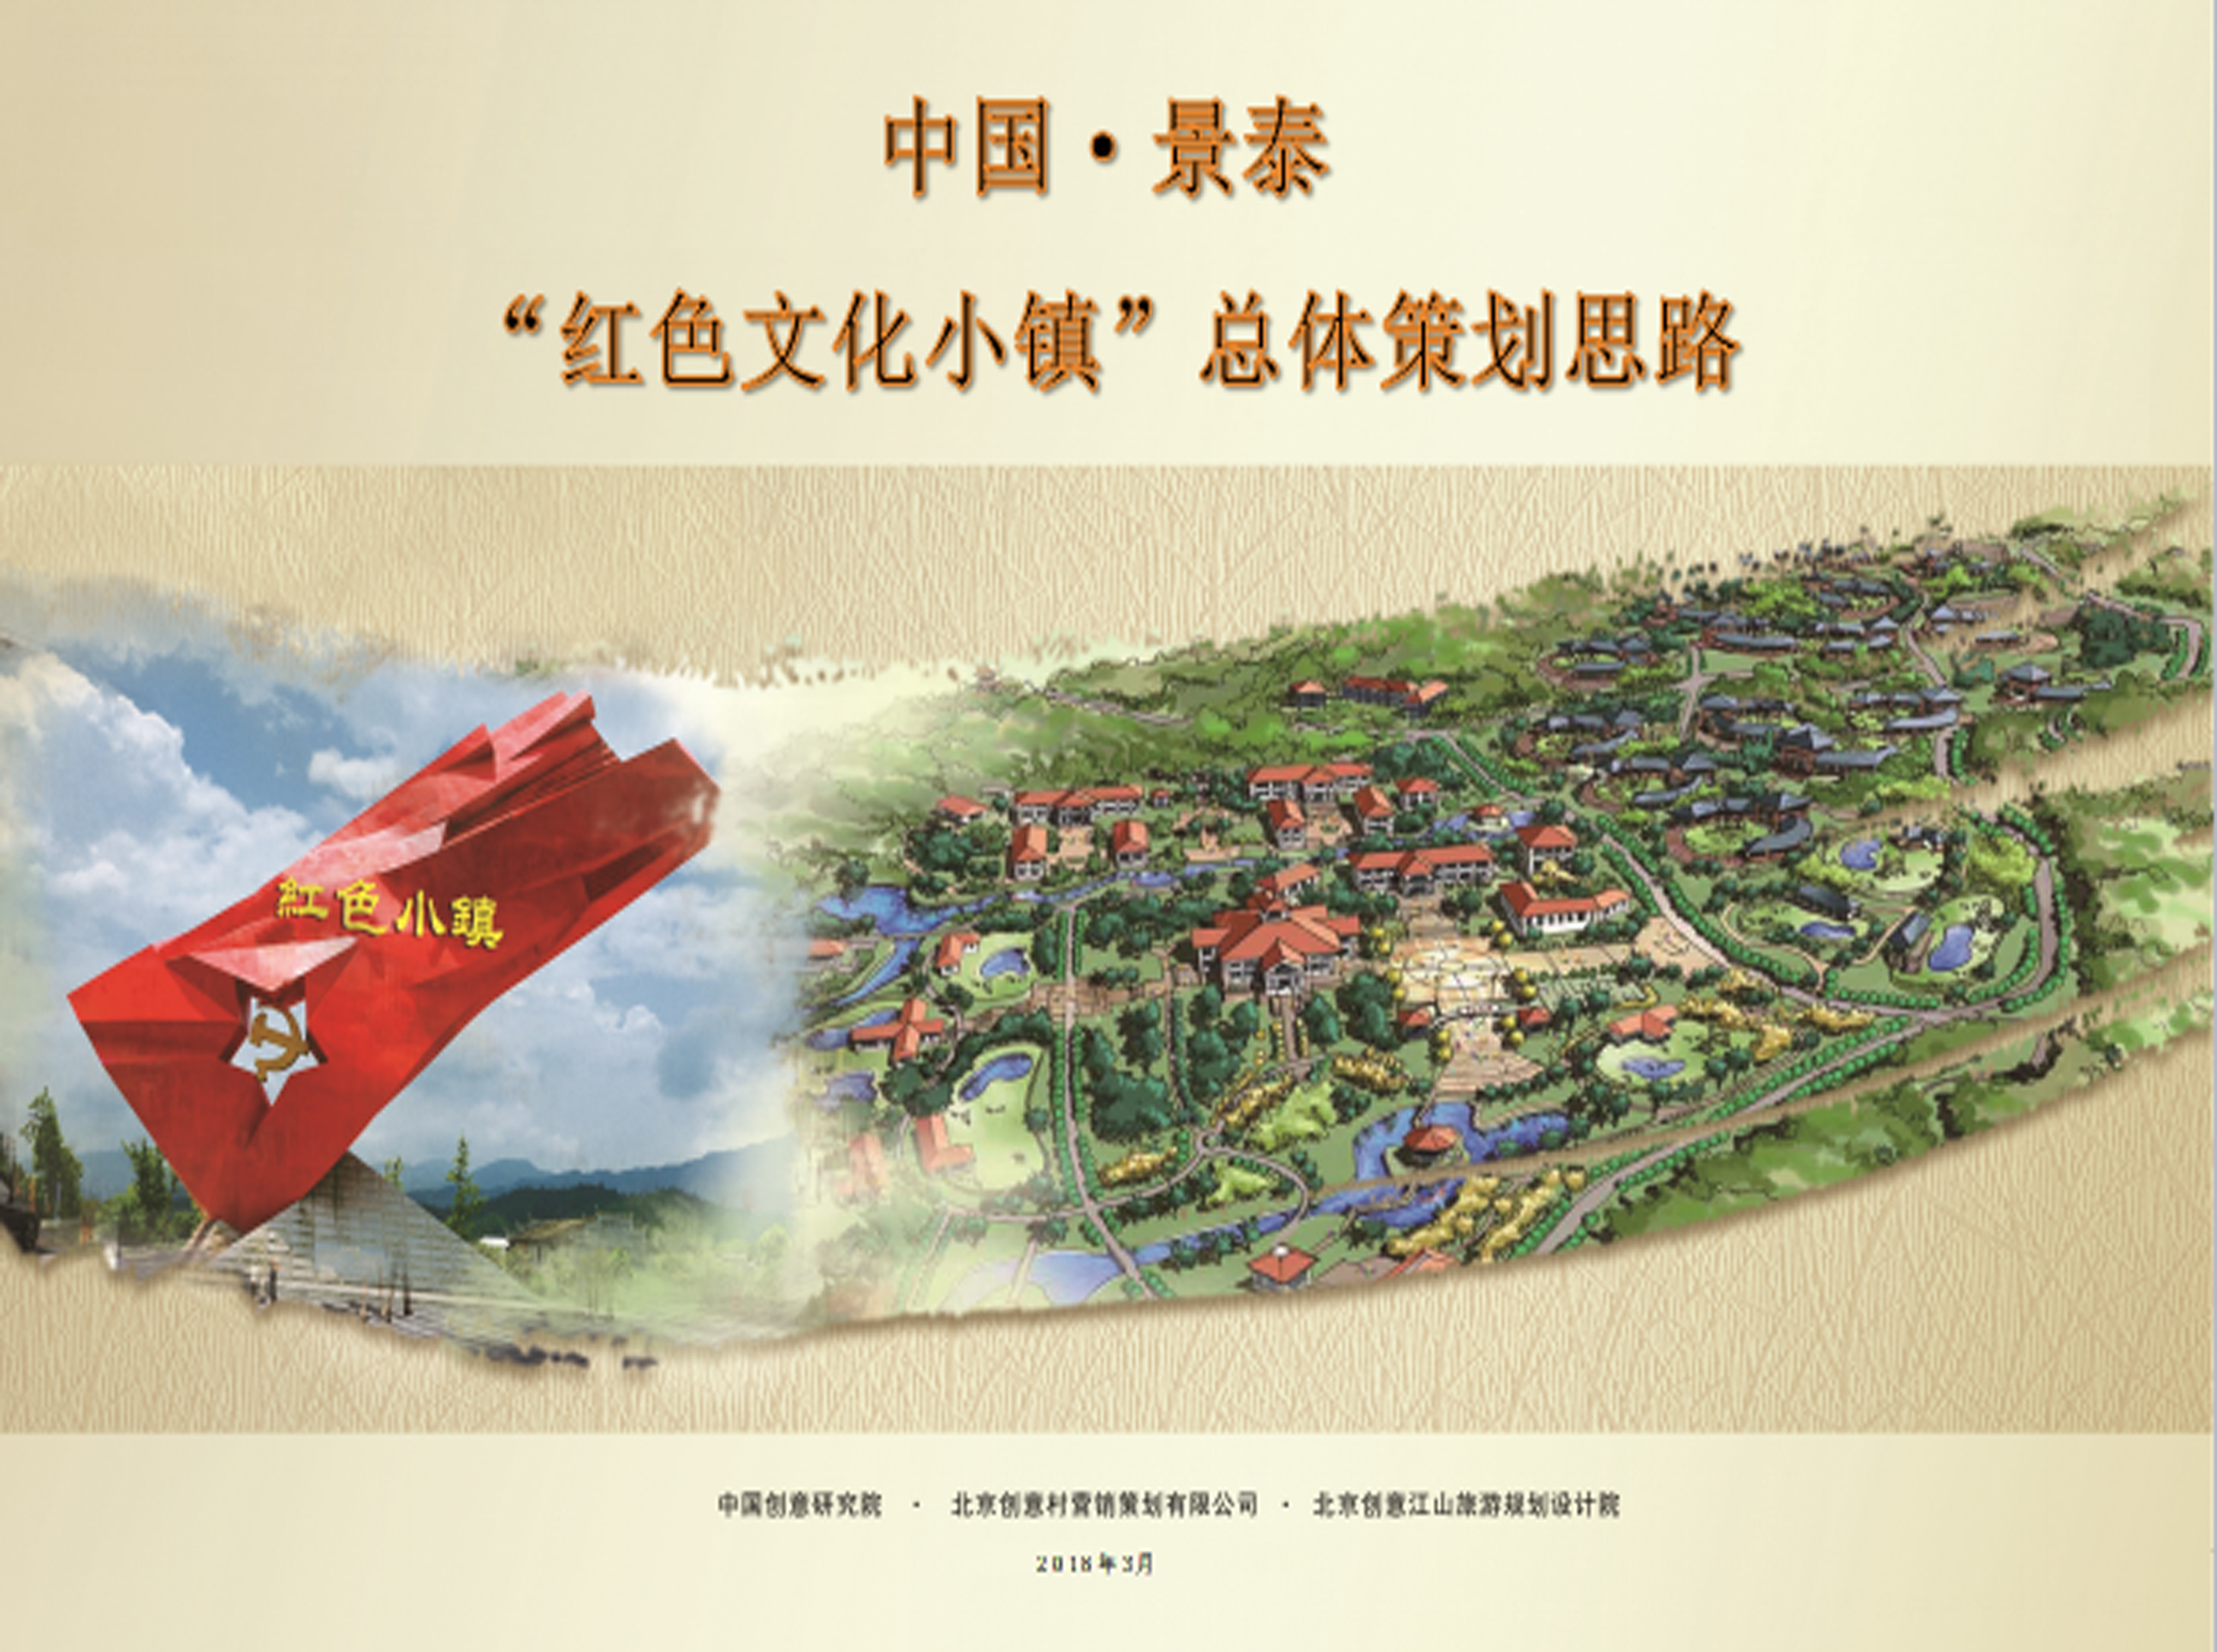 中国·景泰“红色文化小镇”总体策划思路